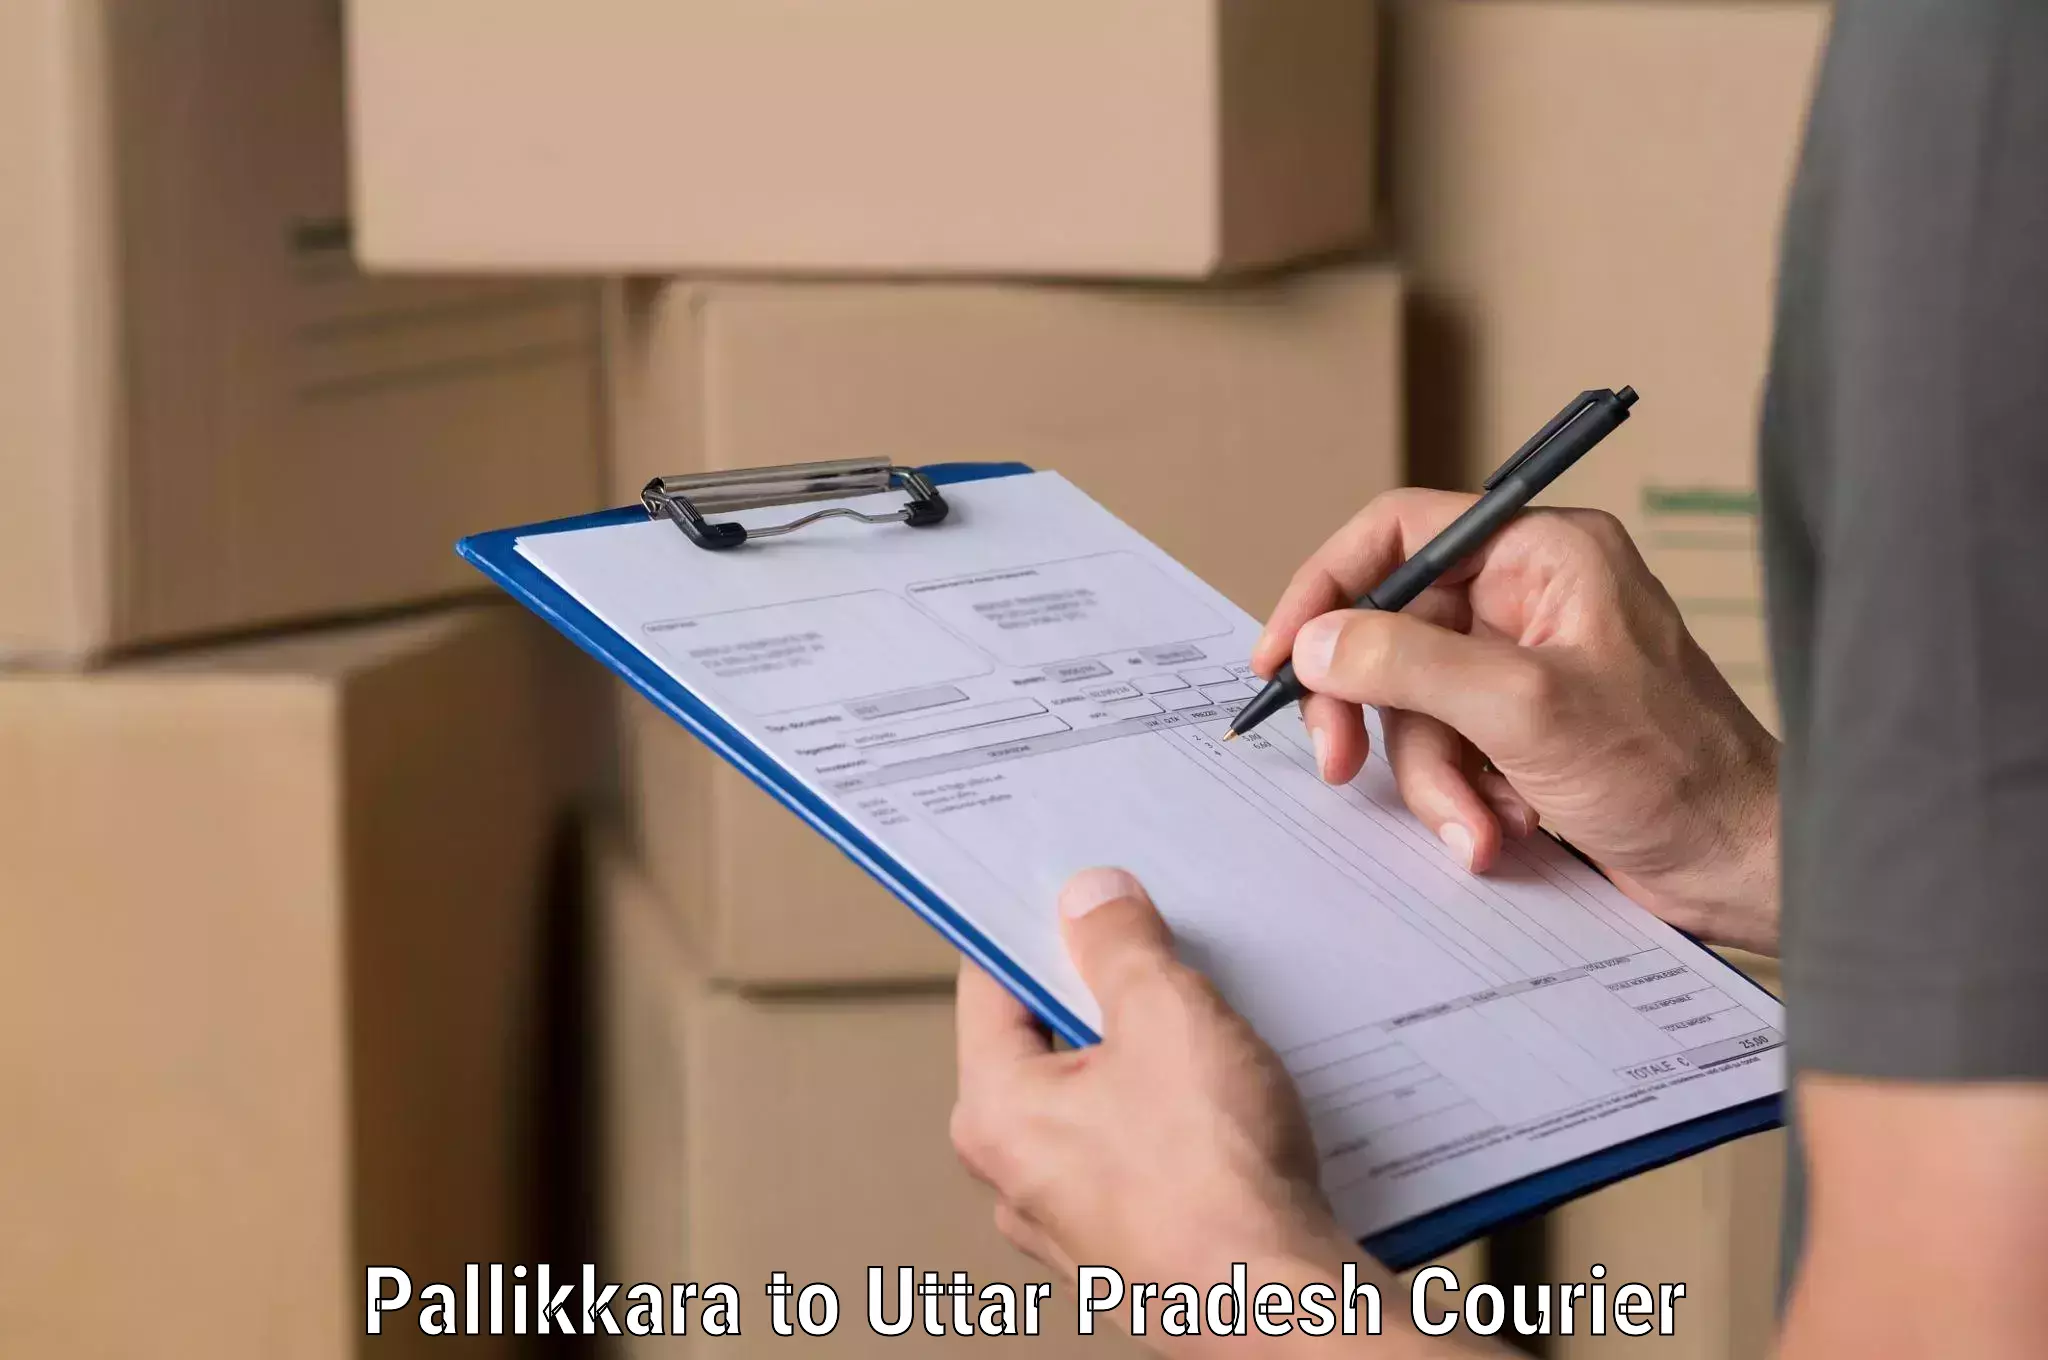 Business logistics support Pallikkara to Rasra